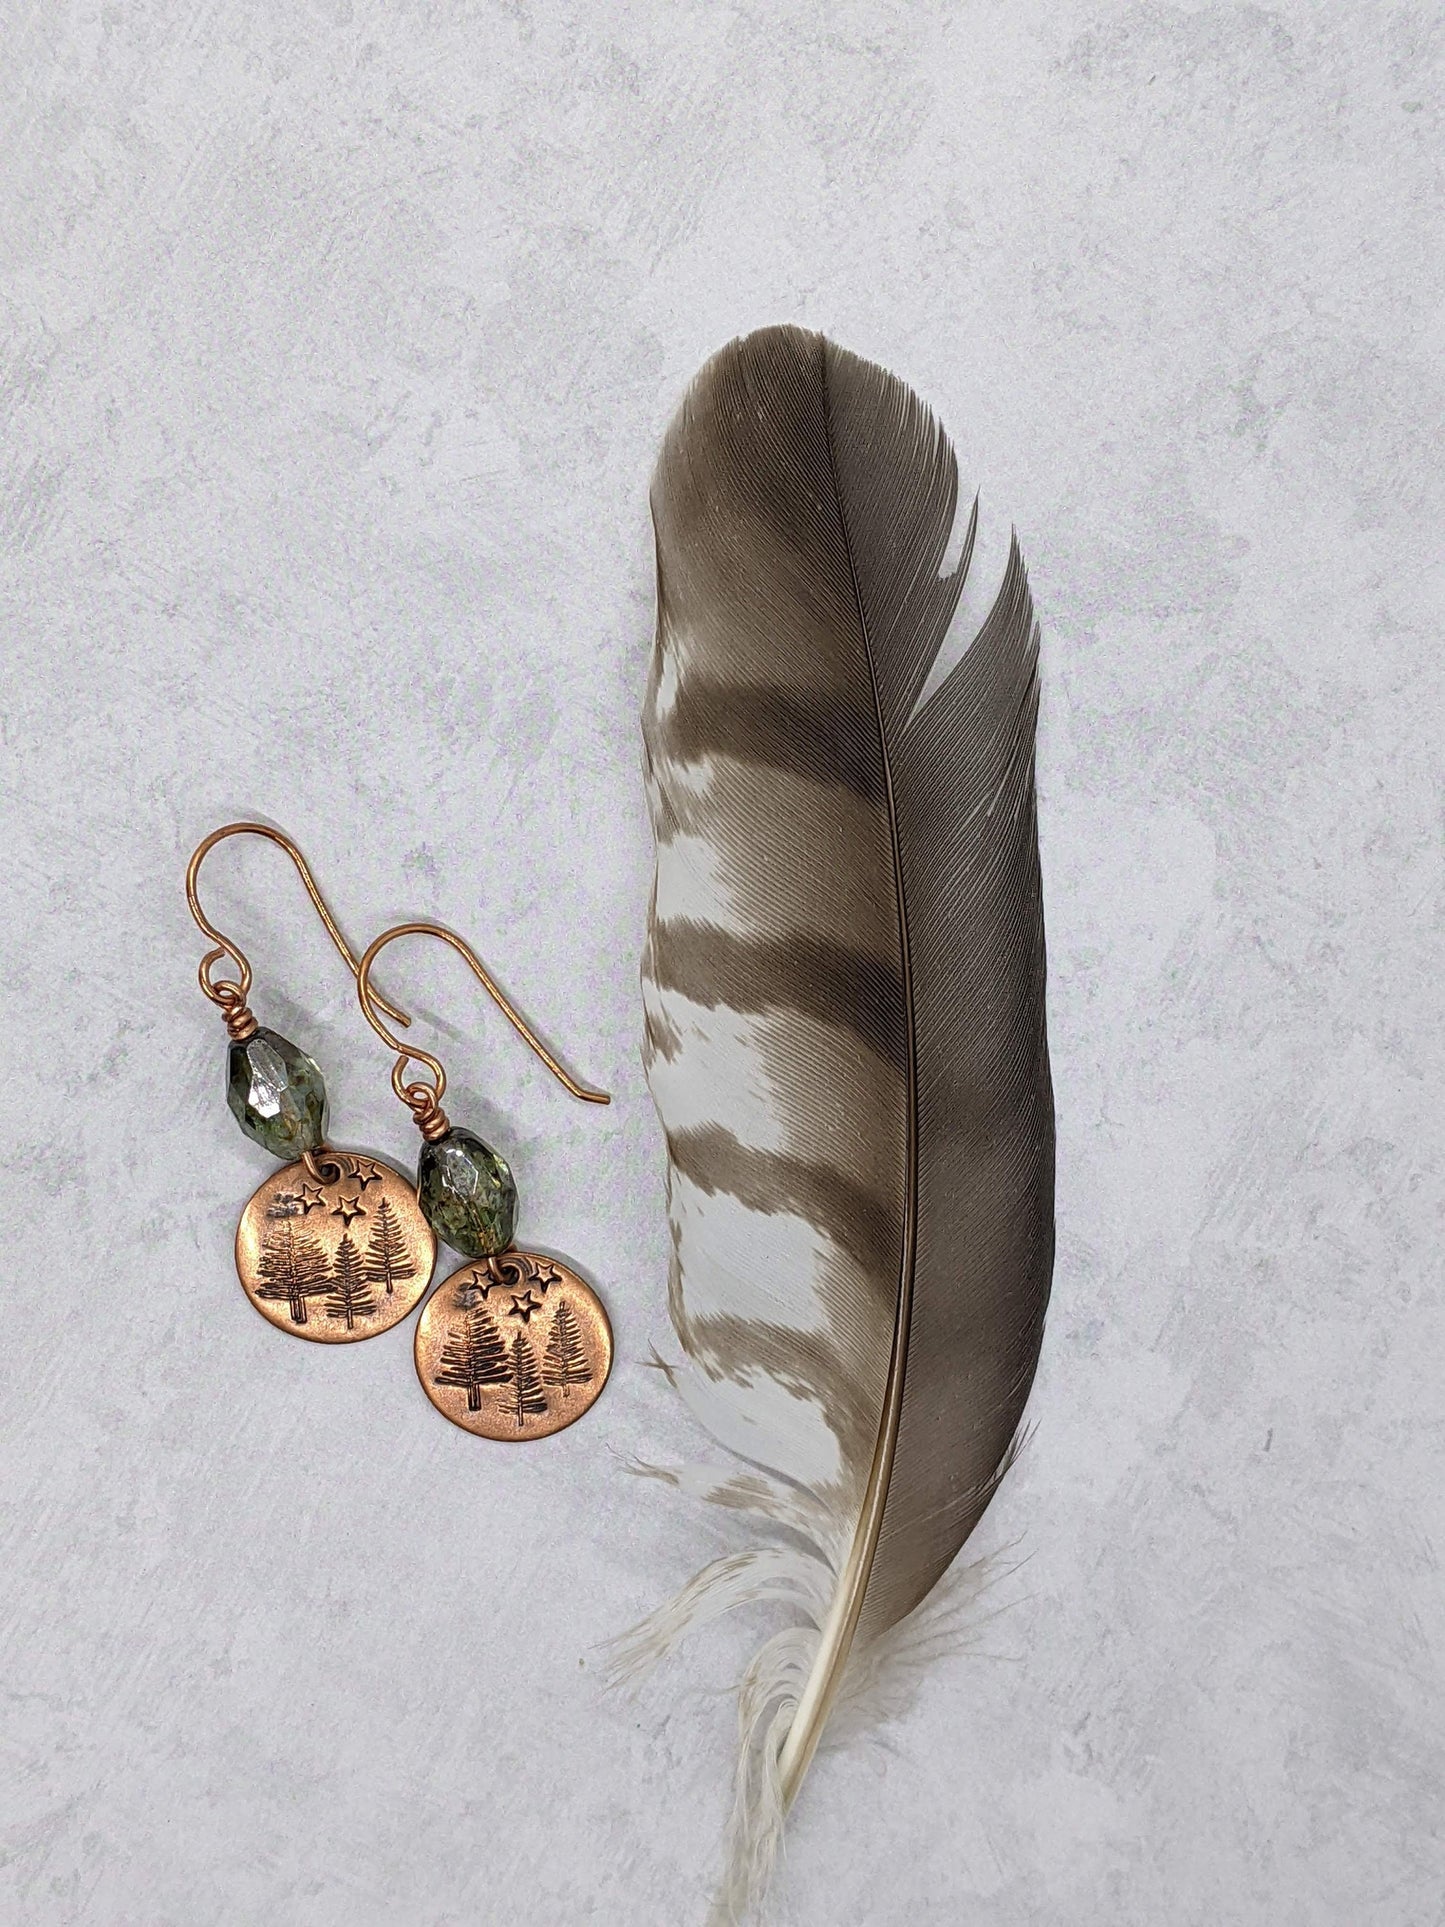 Copper Earrings Woodland